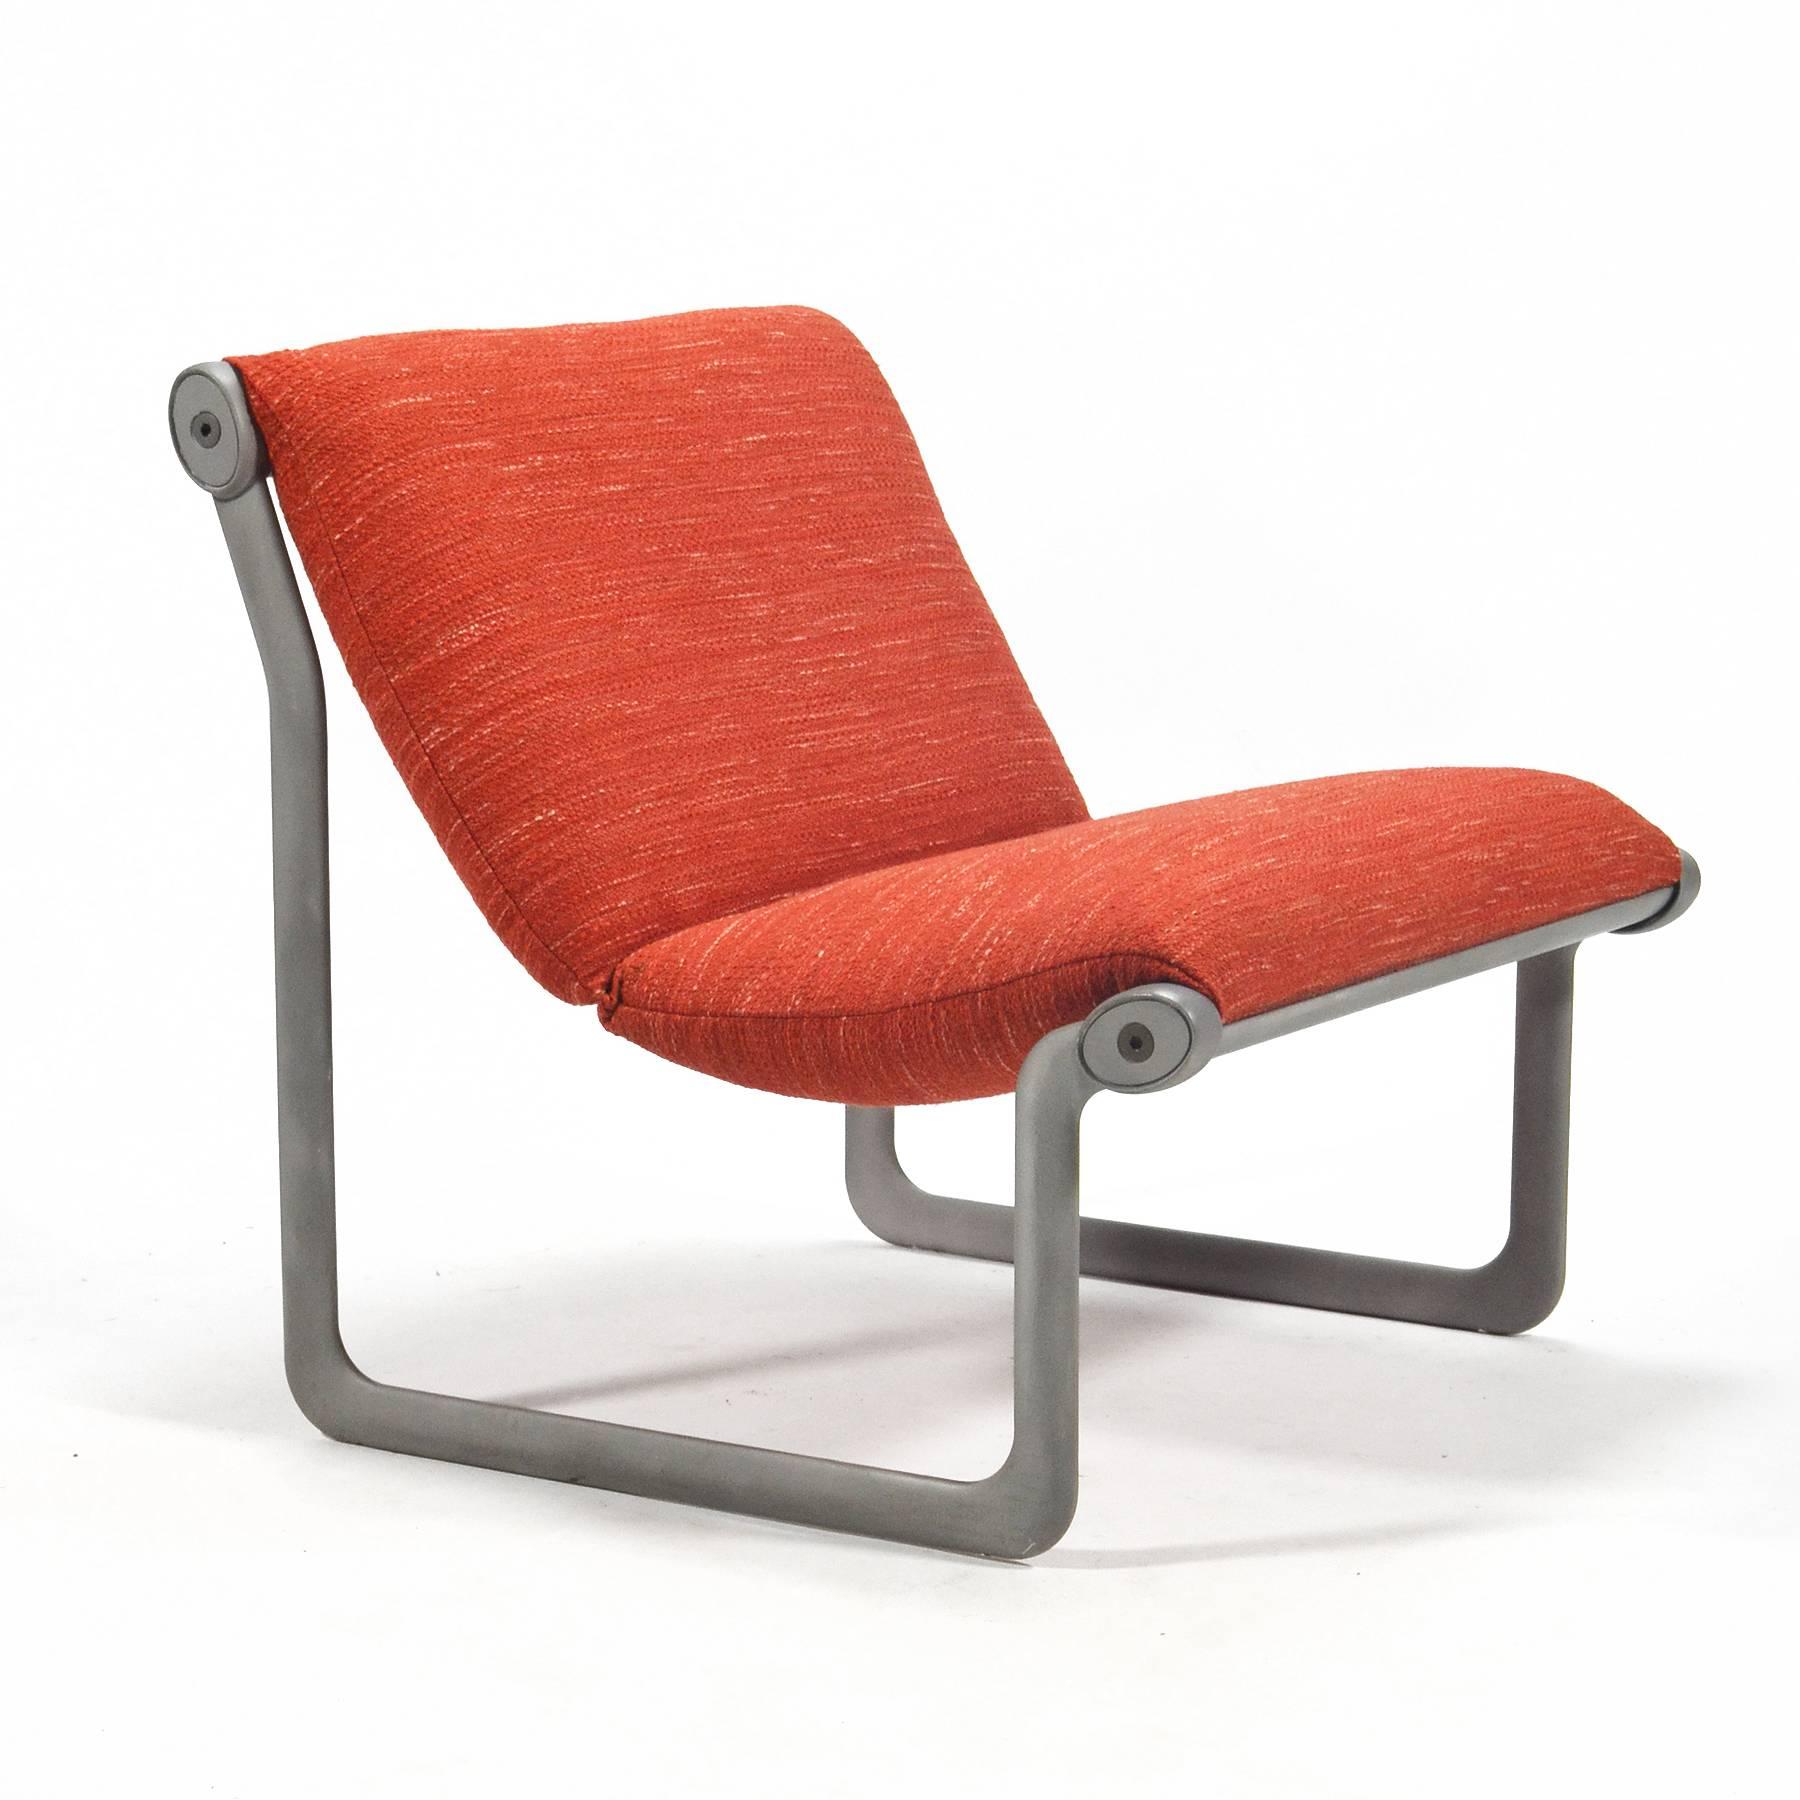 Chaise innovante conçue en 1971 par Bruce Hannah et Andrew Morrison pour Knoll, l'assise en écharpe est suspendue par un cadre en aluminium moulé. Nous disposons de trois ou quatre chaises longues et d'un canapé deux places qui peuvent être